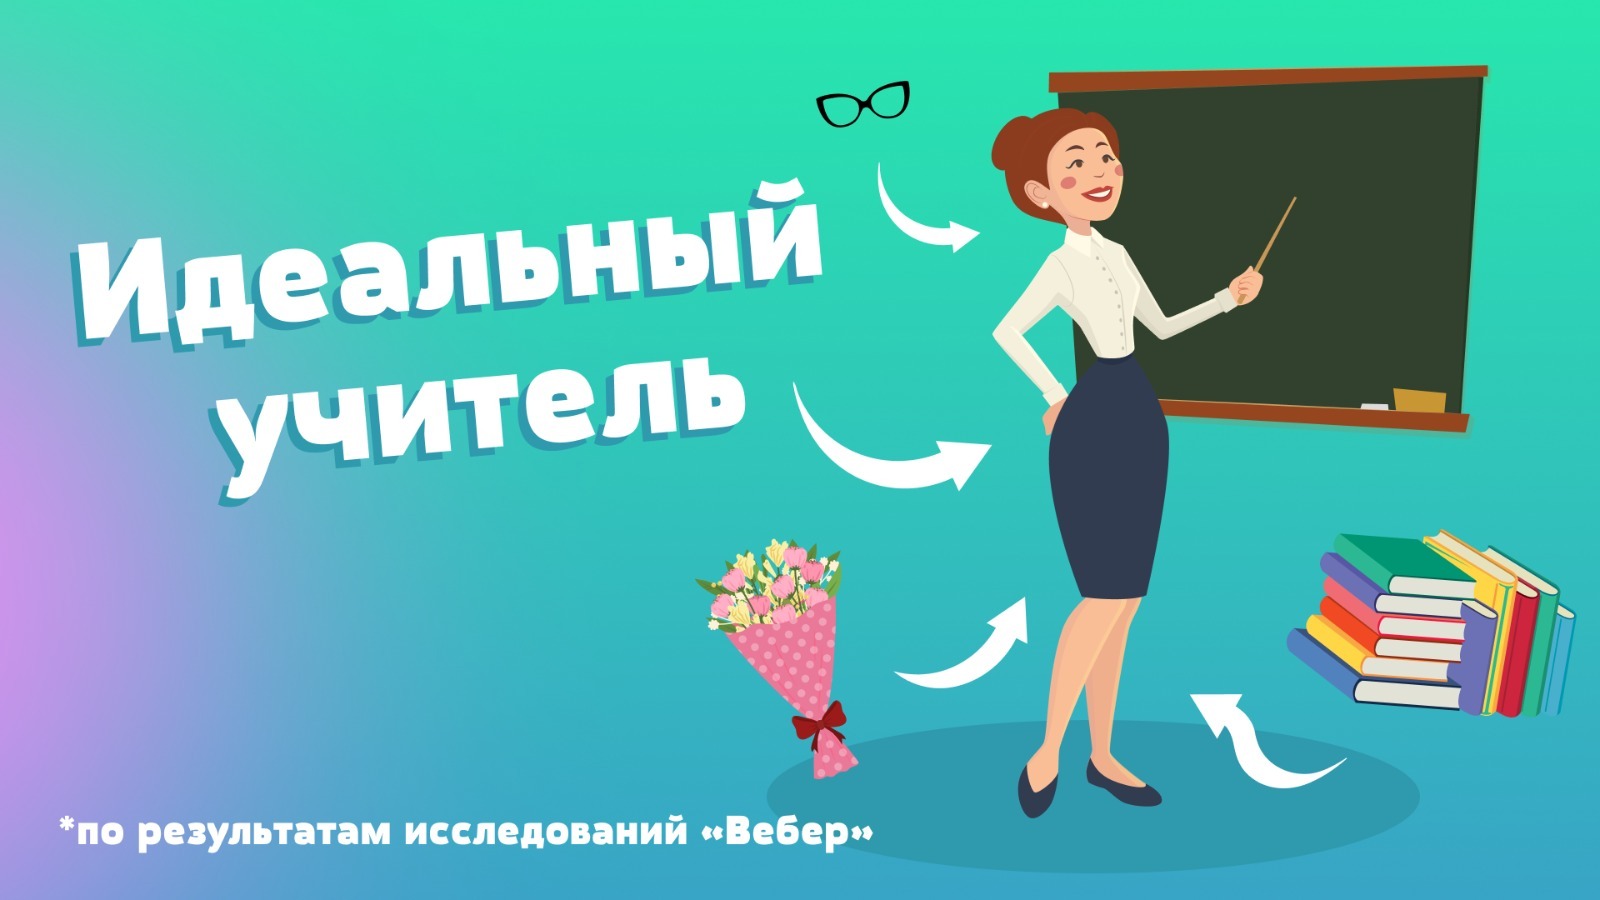 Россияне считают, что учителю необходимо строго соблюдать правила внешнего вида